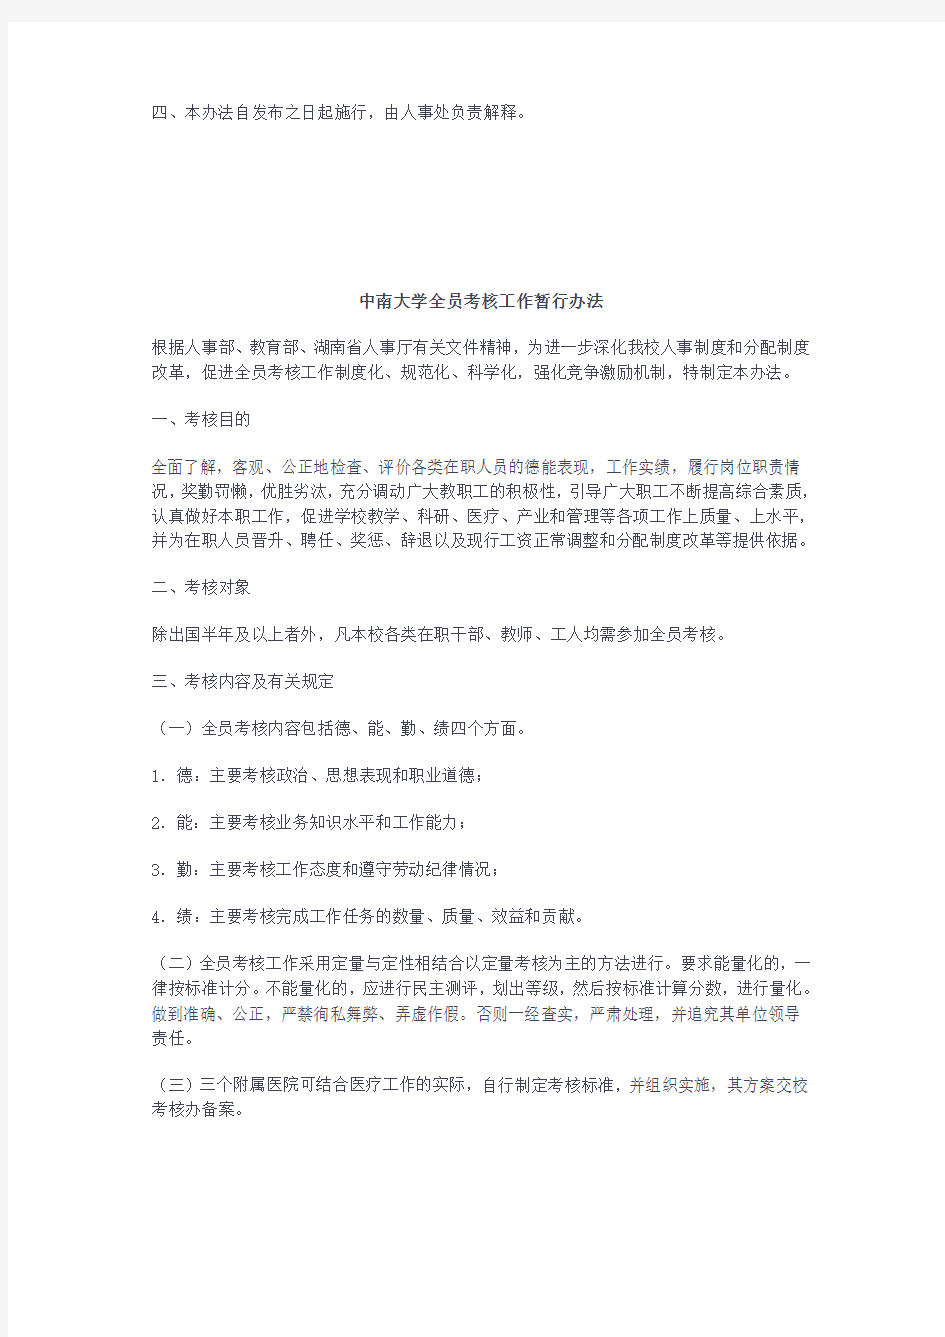 中南大学二级单位综合考核实施办法-中南大学全员考核工作暂行办法